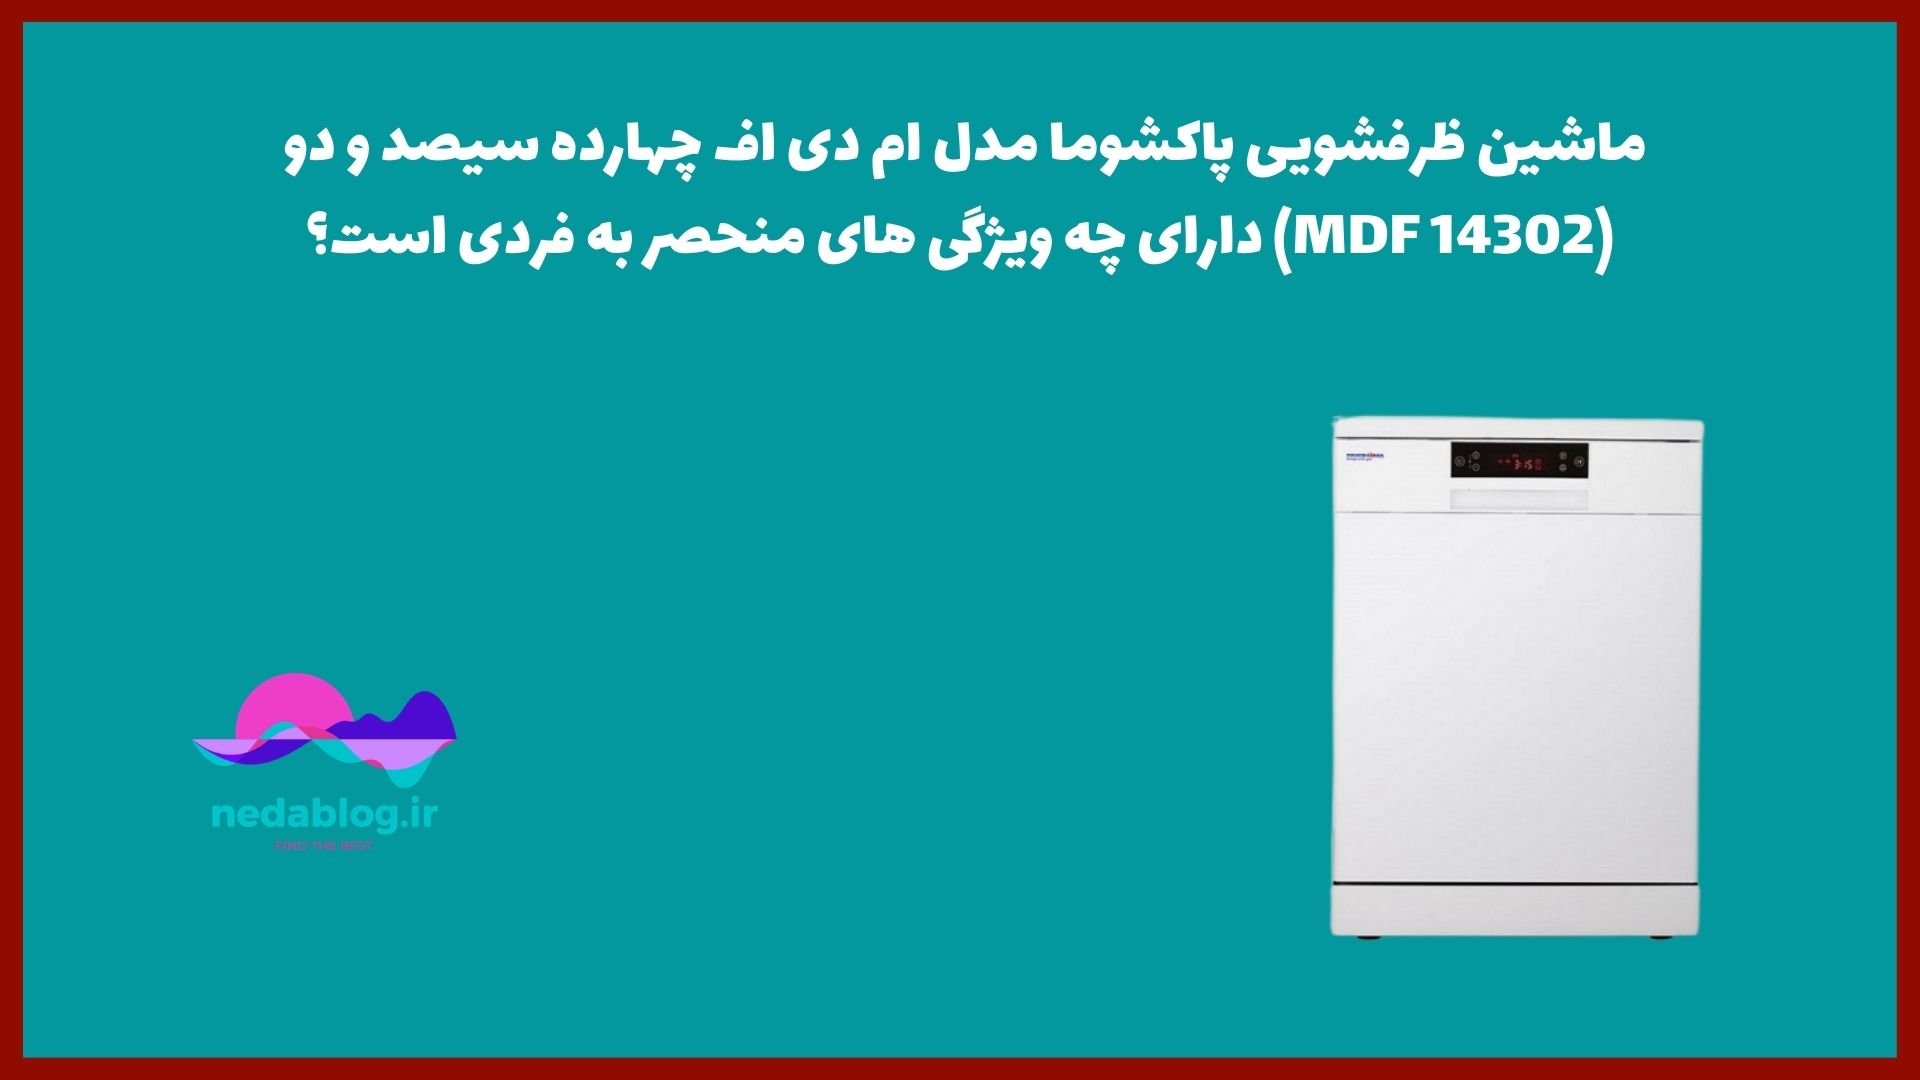 ماشین ظرفشویی پاکشوما مدل ام دی اف چهارده سیصد و دو (MDF 14302) دارای چه ویژگی های منحصر به فردی است؟